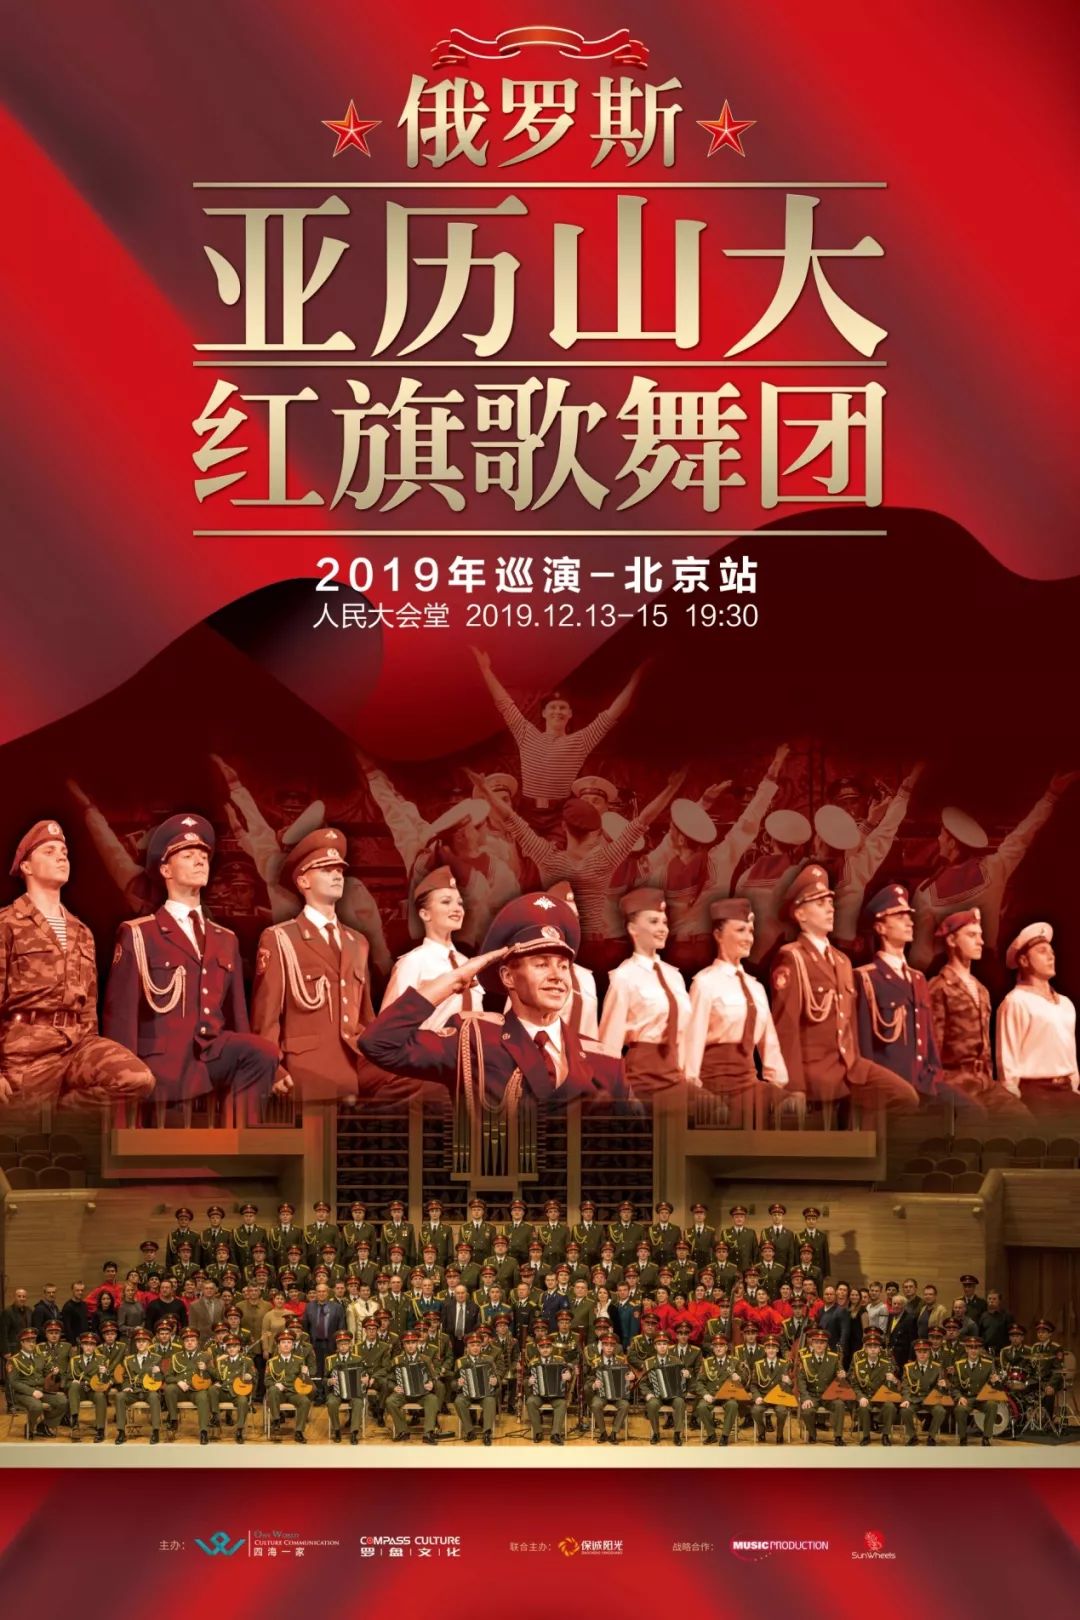 【2019中国巡演节目单 】上半场合唱《不朽的传奇》(又名《苏军之歌》